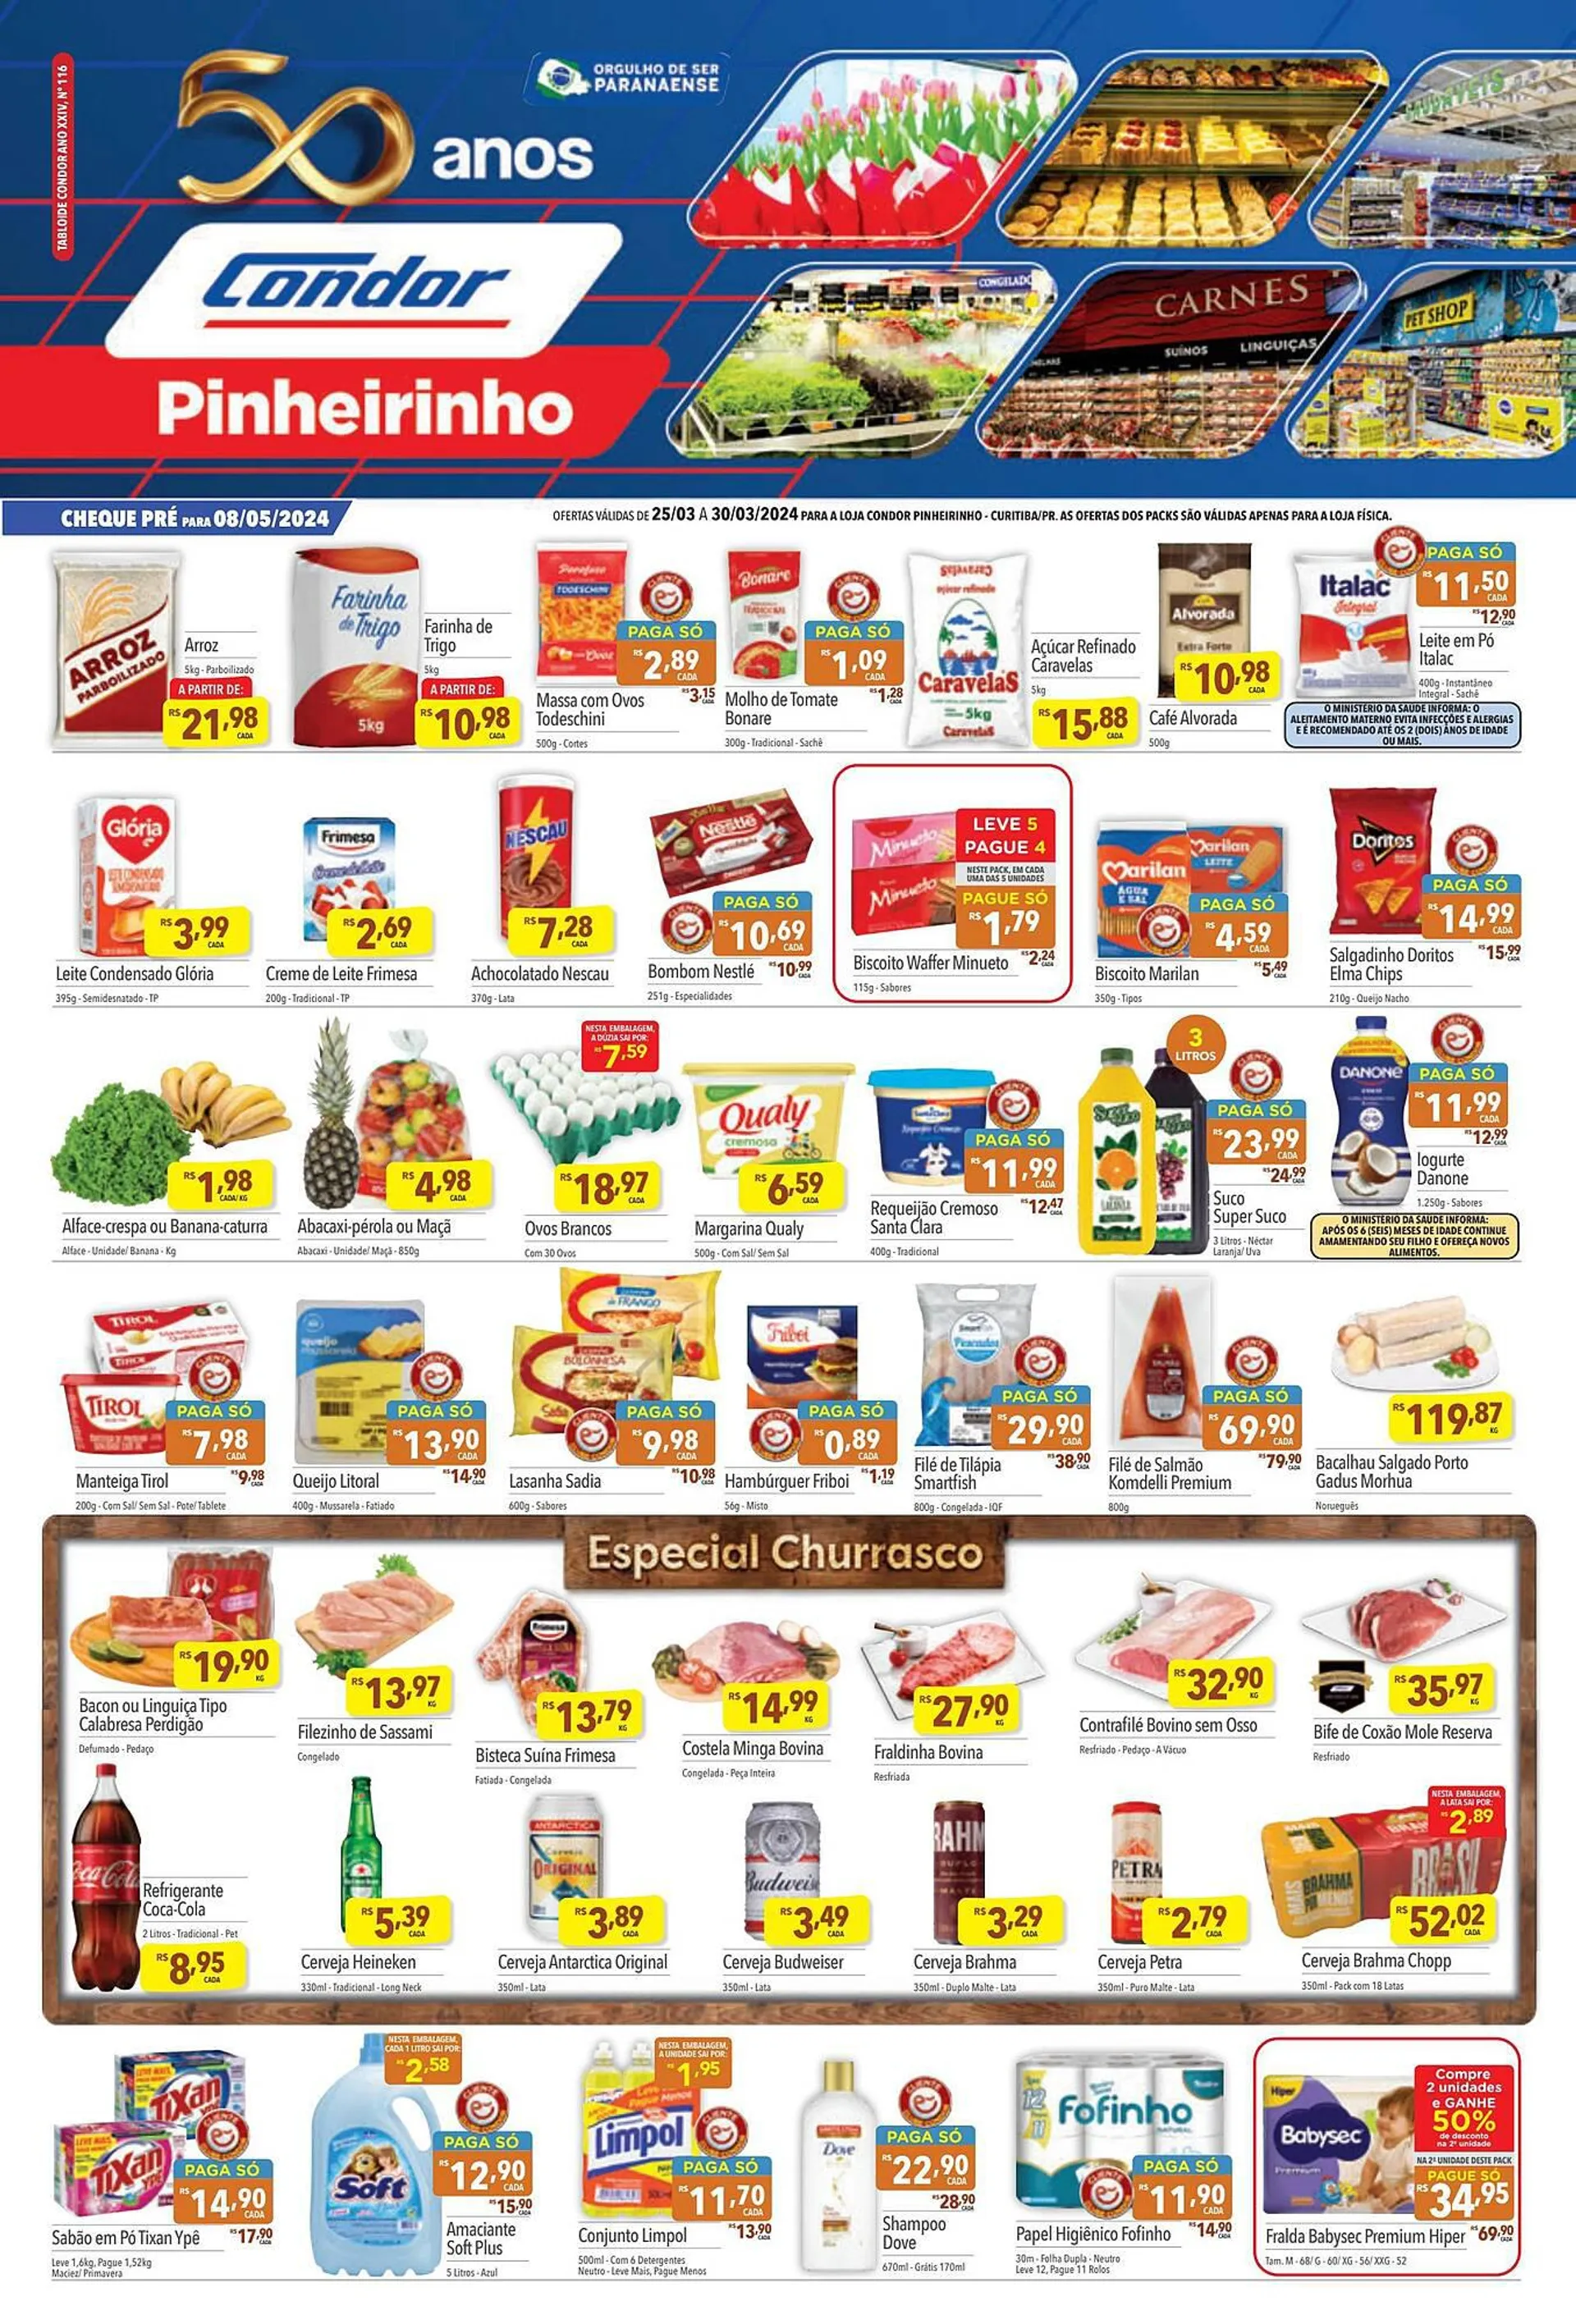 Encarte de Catálogo Supermercados Condor 25 de março até 30 de março 2024 - Pagina 1